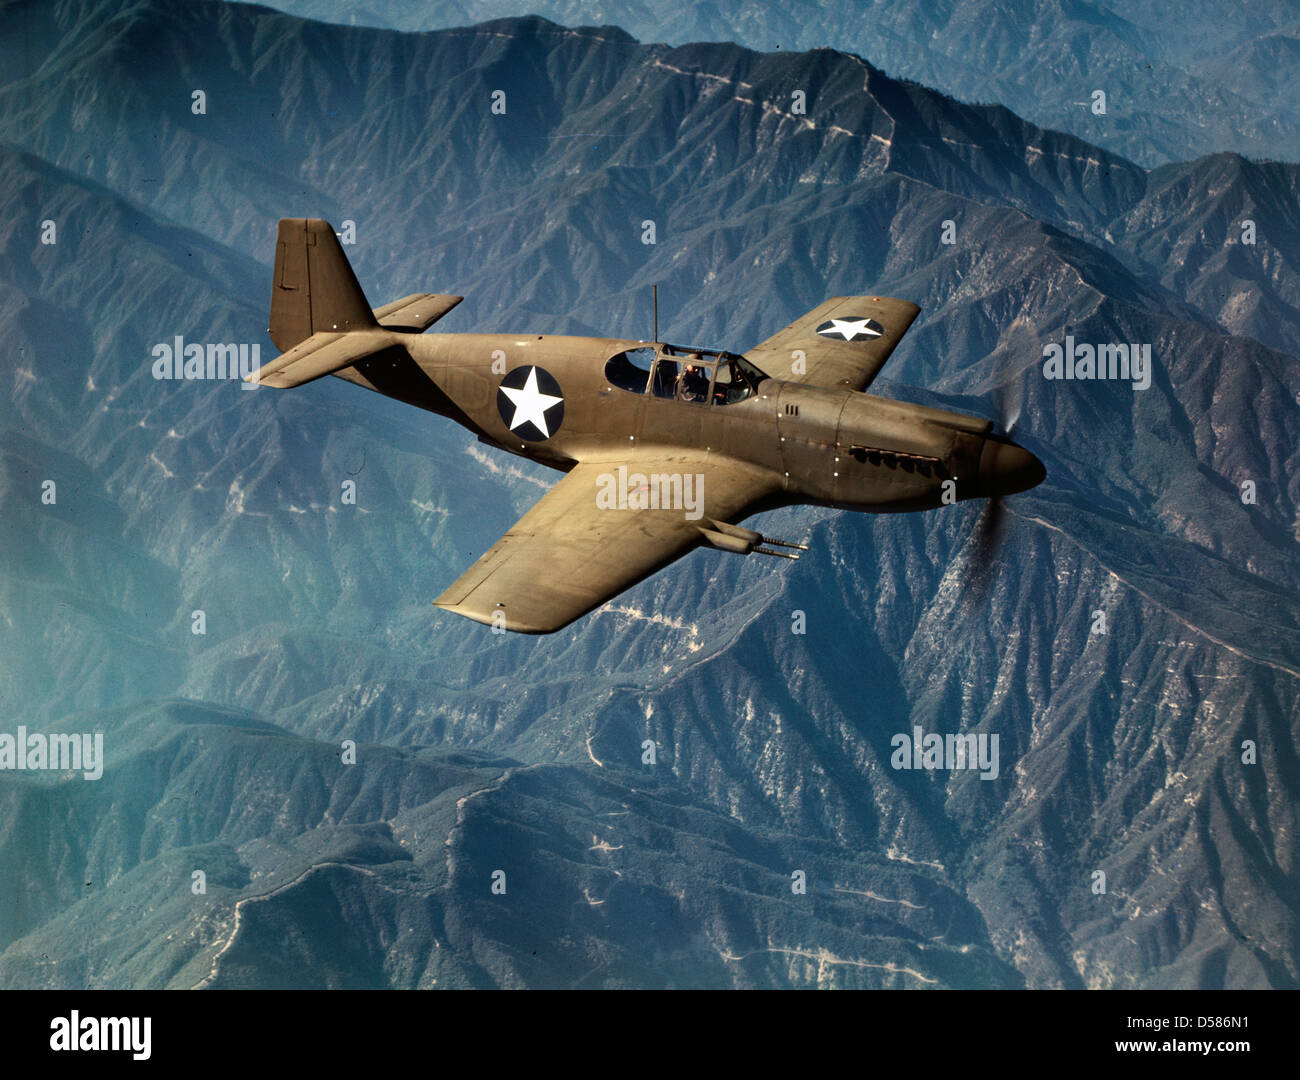 P-51 'Mustang 'fighter in volo, Inglewood, Calif. Il 'Mustang', costruito dalla North American Aviation, incorporato, è l'unico americano-costruito fighter utilizzato dalla Royal Air Force di Gran Bretagna, circa 1942 Foto Stock